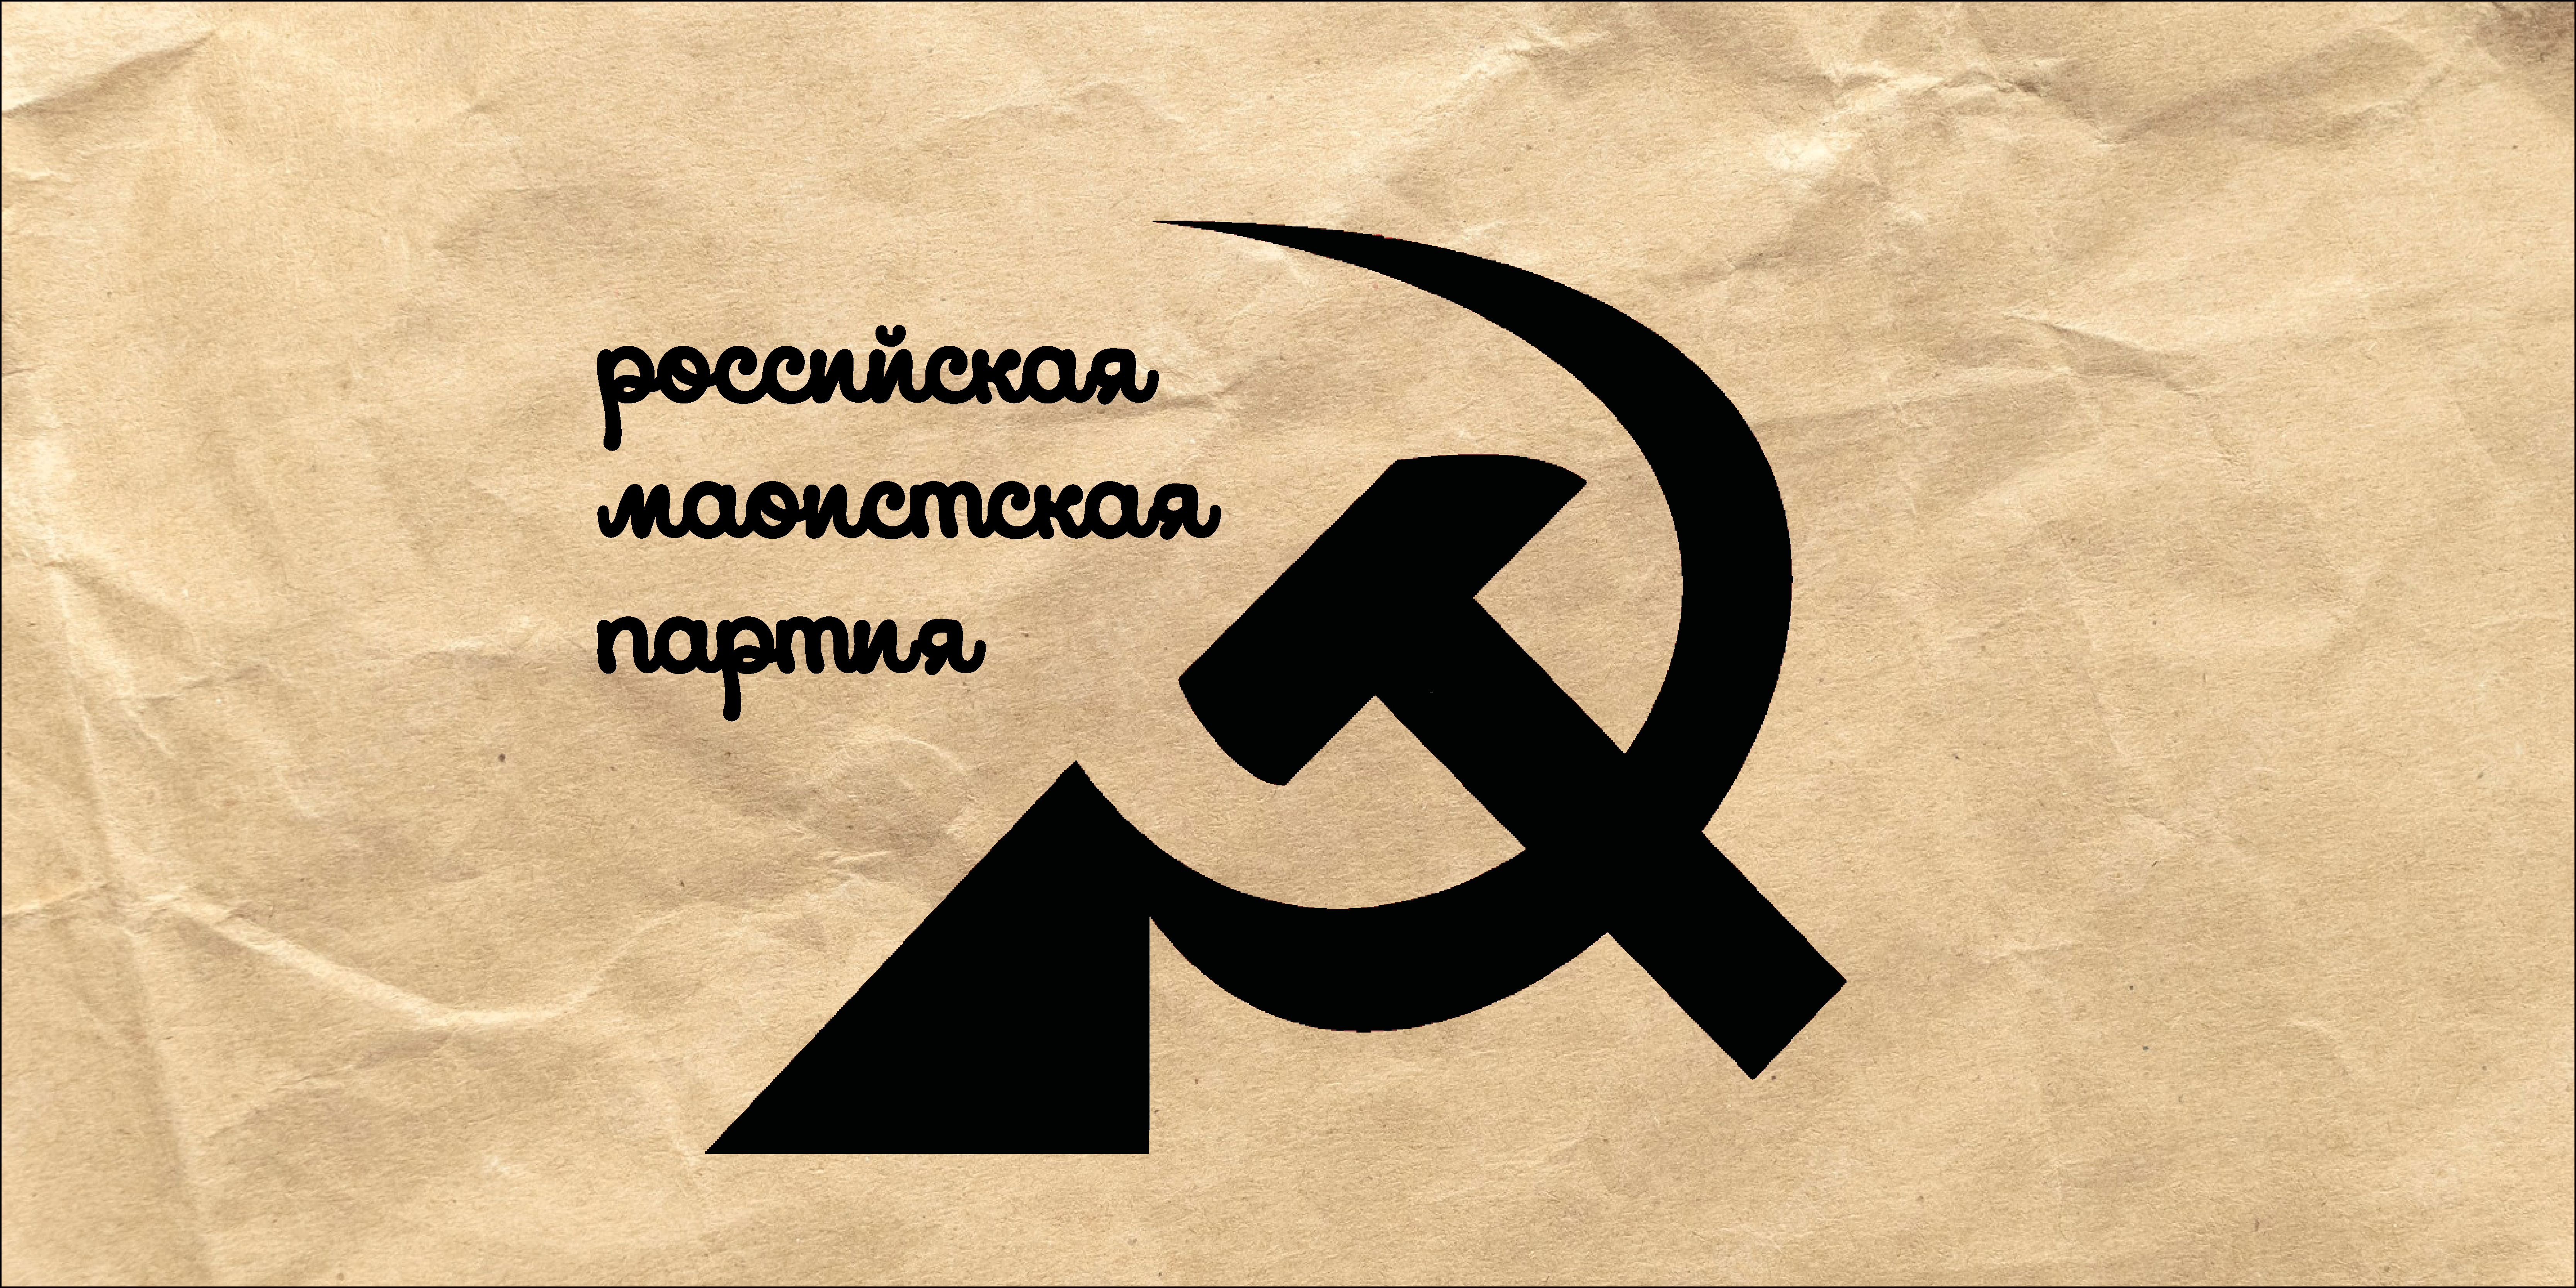 РМП | Российская маоистская партия